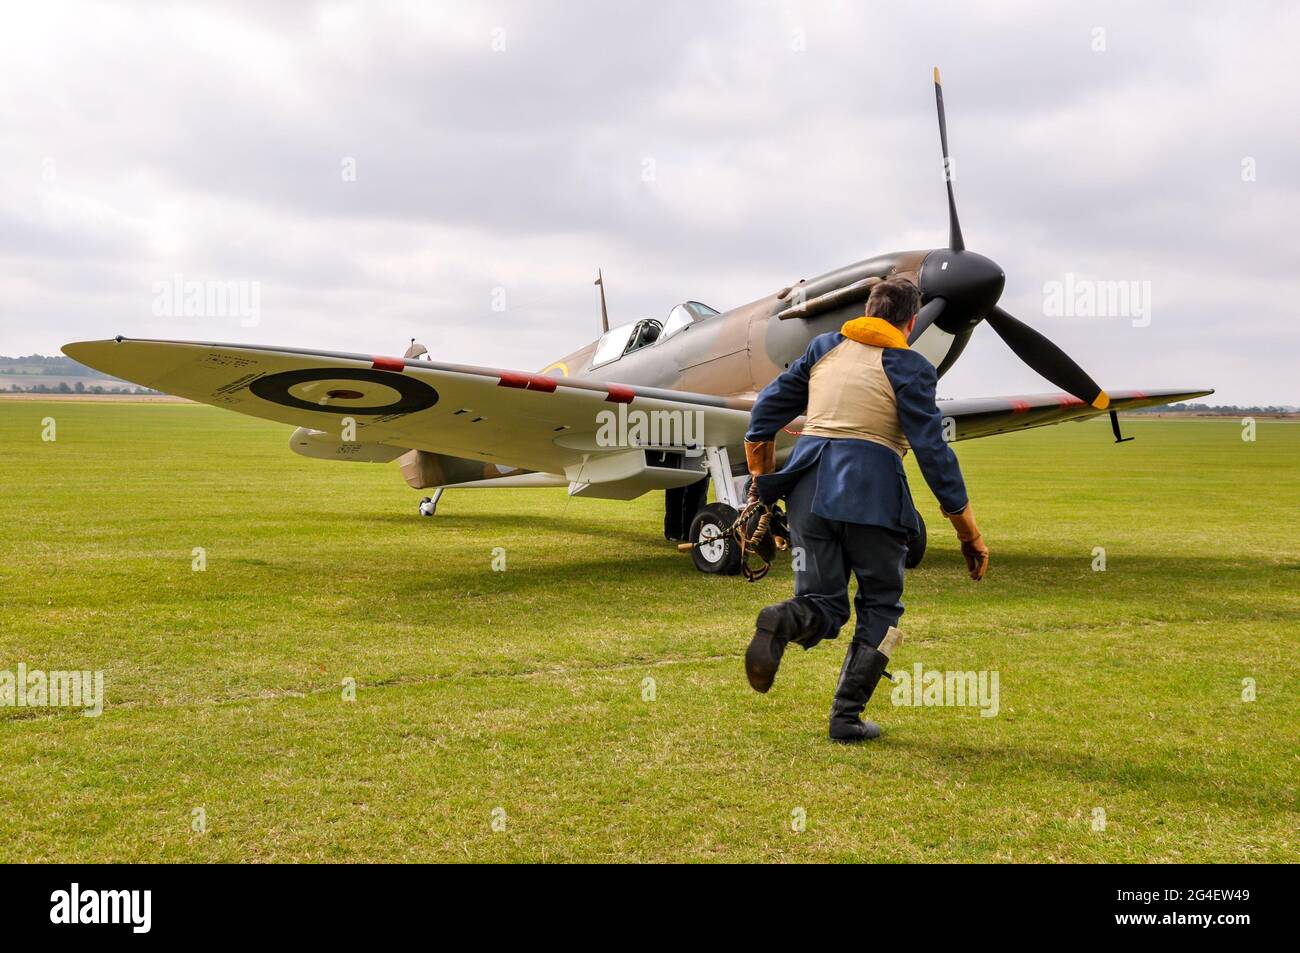 Reconstitution d'une bataille de Grande-Bretagne de la Seconde Guerre mondiale, avec un pilote de chasse de l'Armée de l'Air royale qui se dirige vers un Spitfire restauré du début de la guerre Banque D'Images